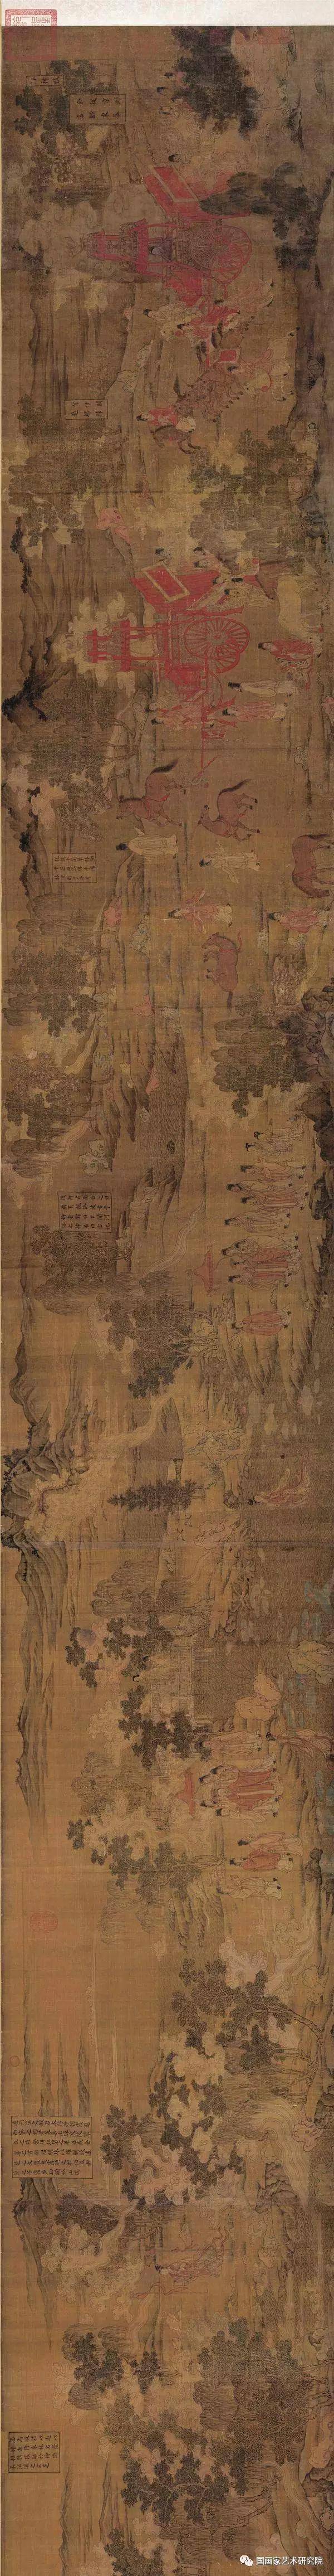 中国十大传世名画之顾恺之《洛神赋图》